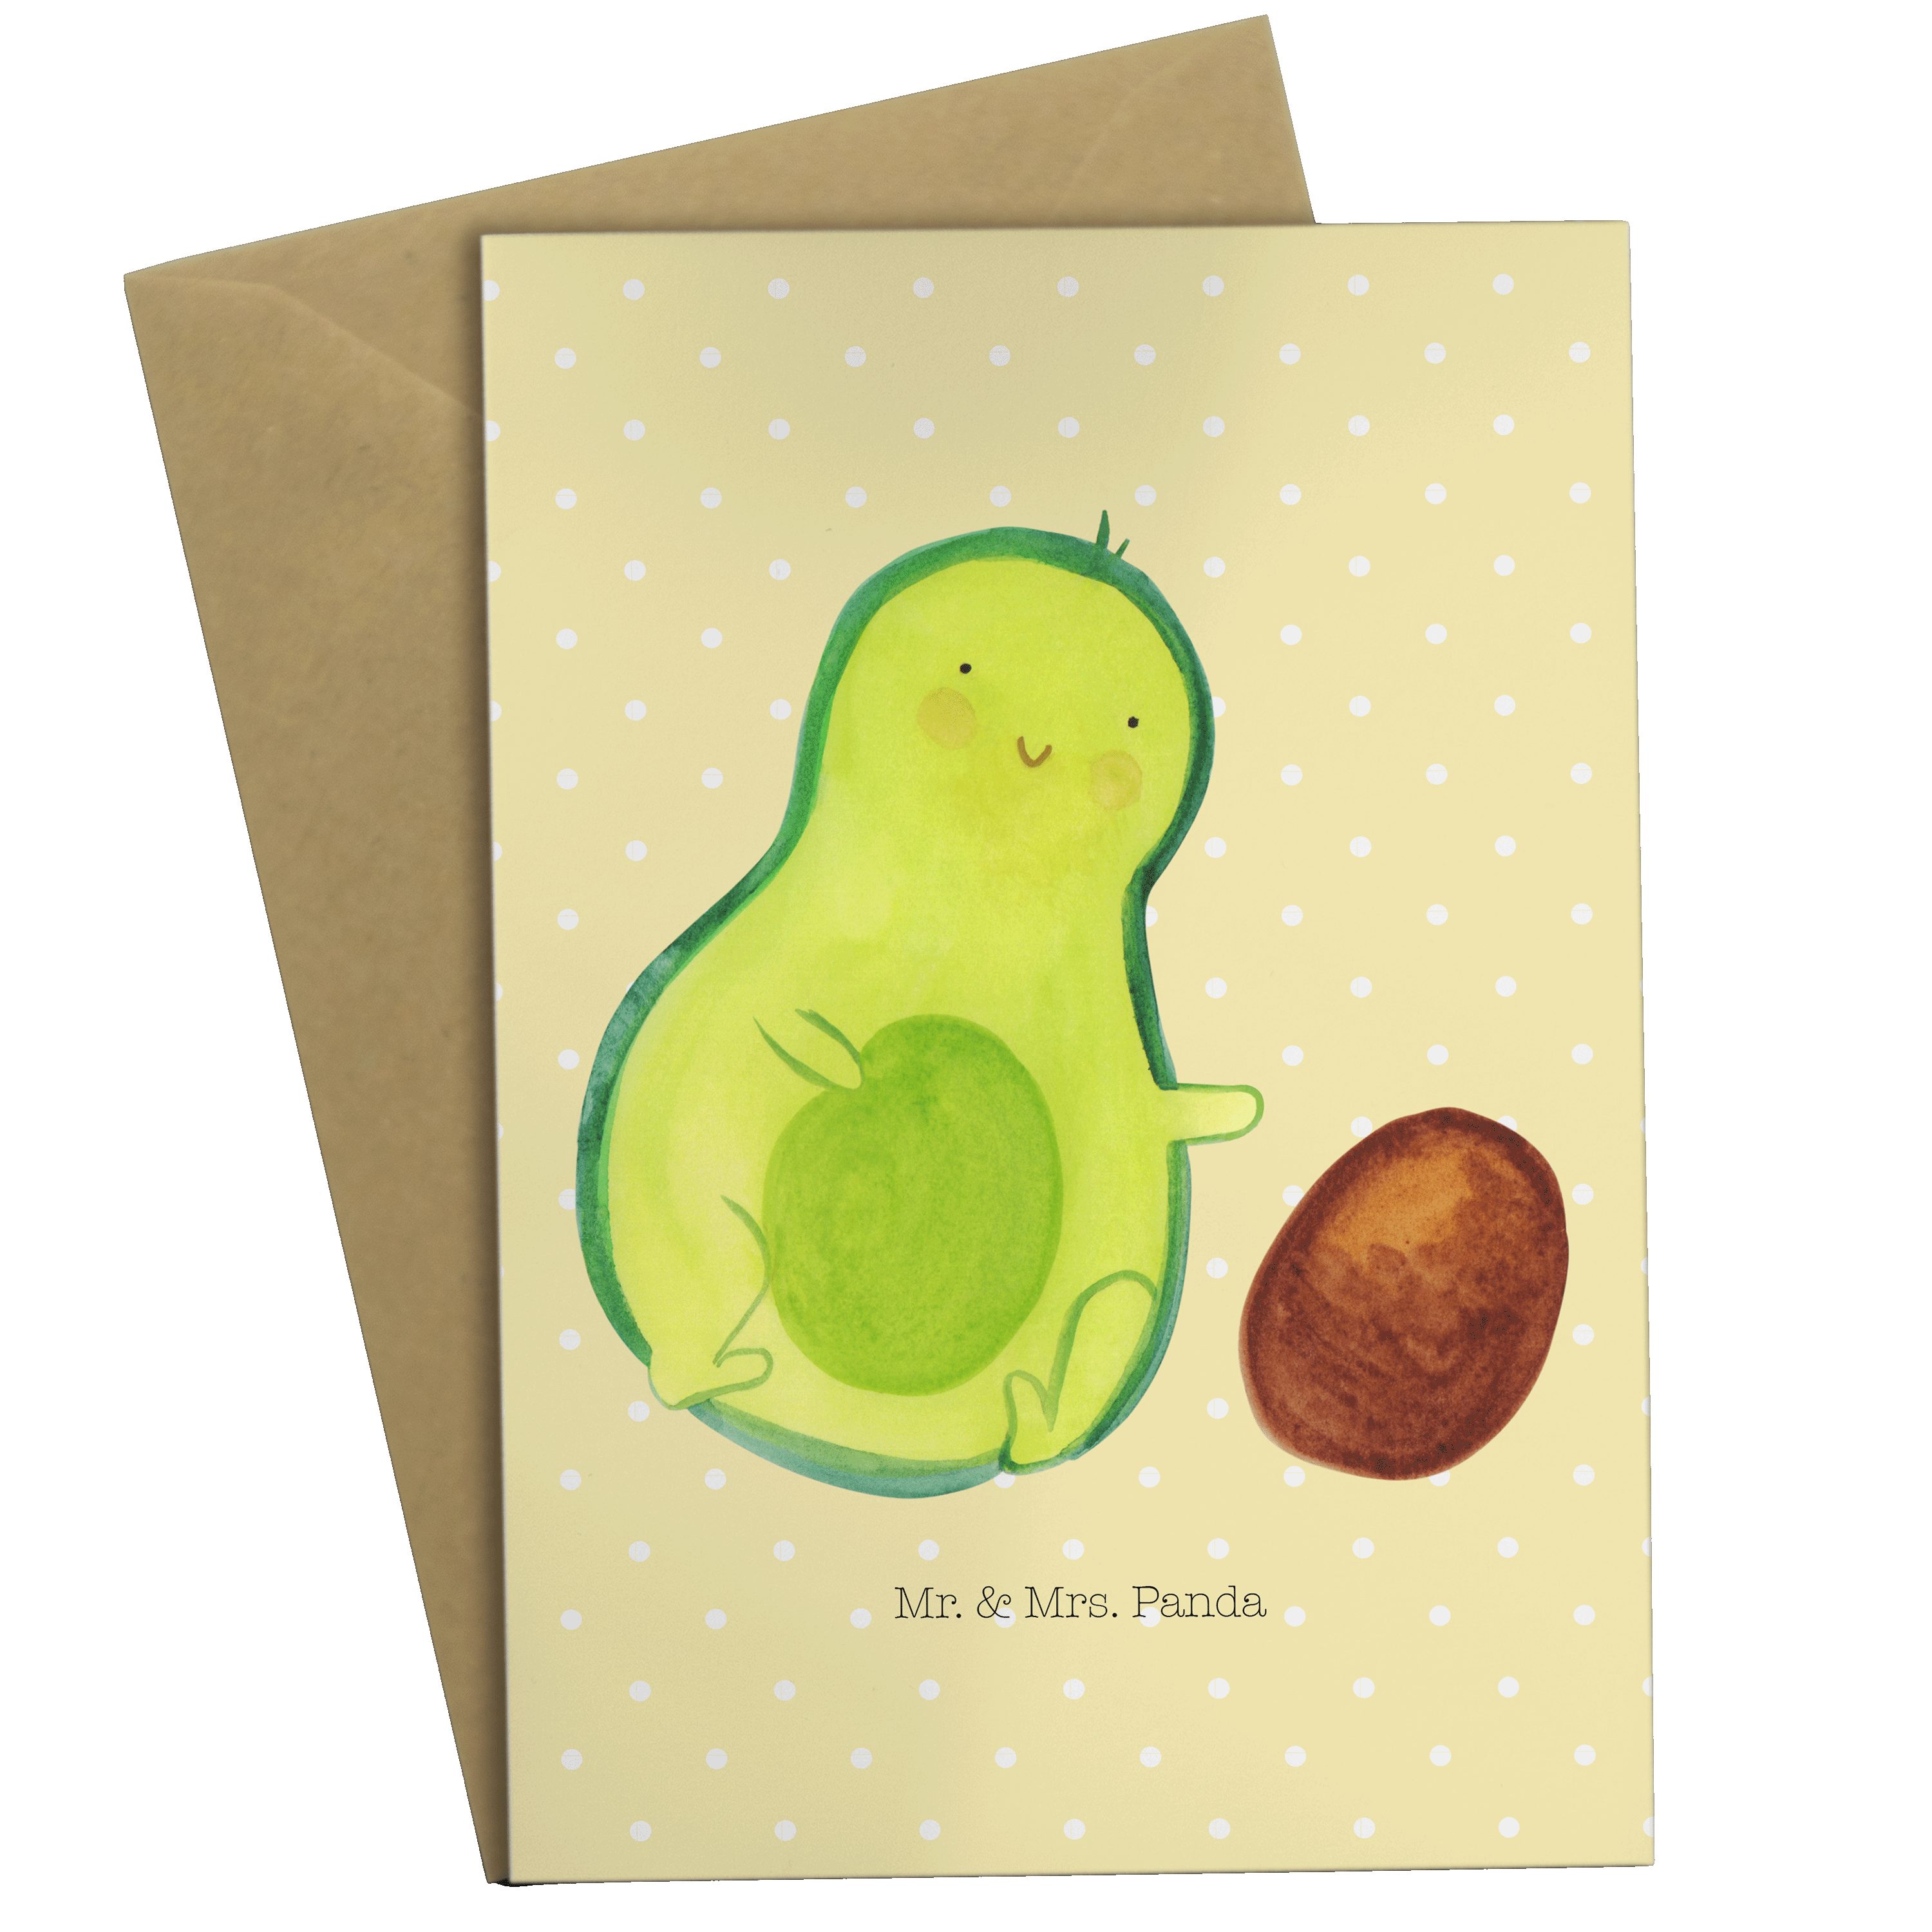 Gelb & Mr. - Hochze - Avocado Mrs. Pastell Grußkarte Einladungskarte, rollt Geschenk, Kern Panda